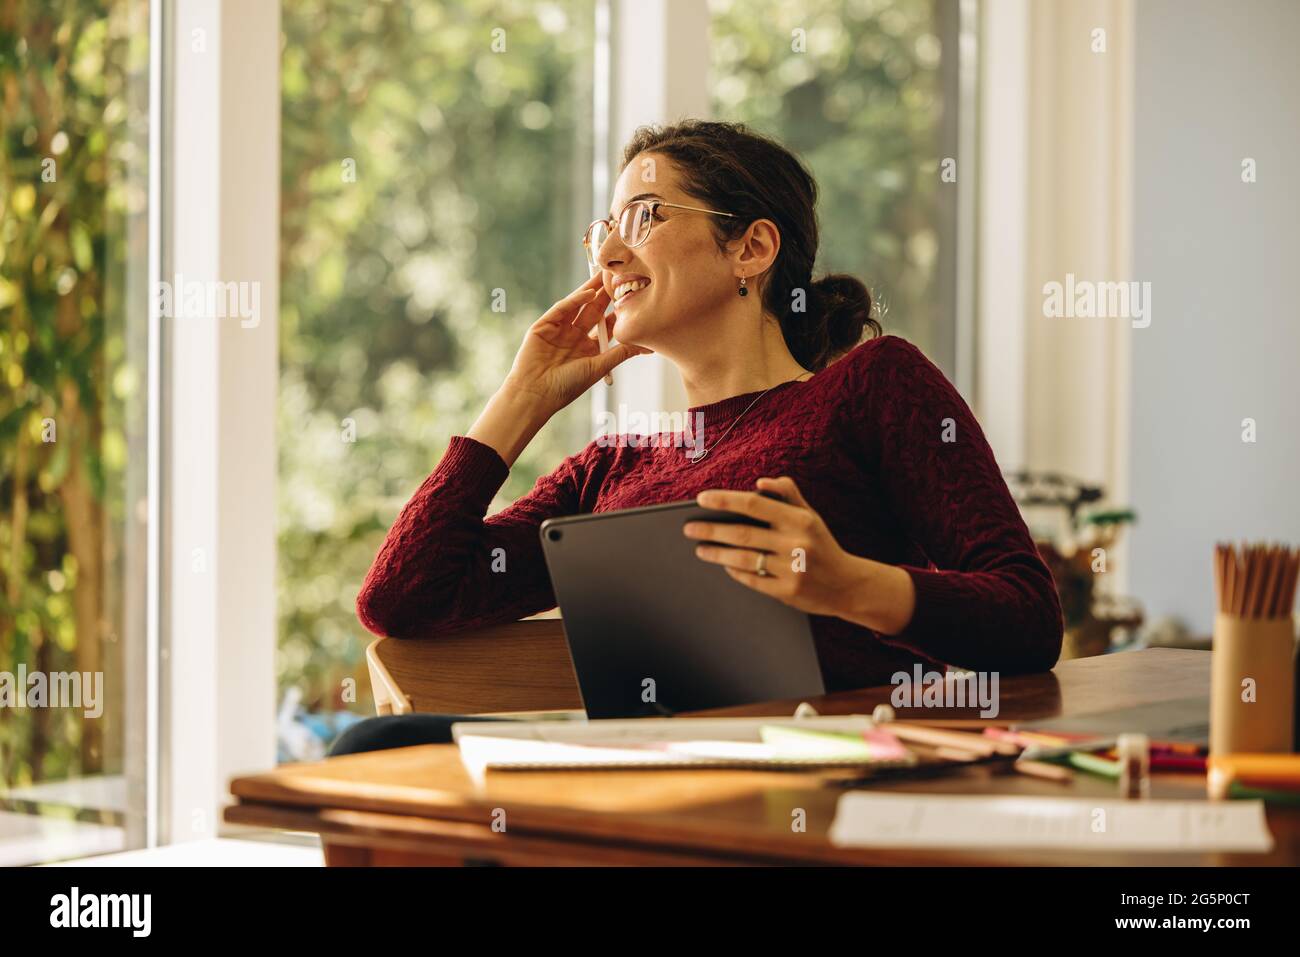 Donna di design seduta con tablet digitale che guarda lontano con la mano sul mento. L'artista pensa a nuove idee mentre lavora alle illustrazioni. Foto Stock